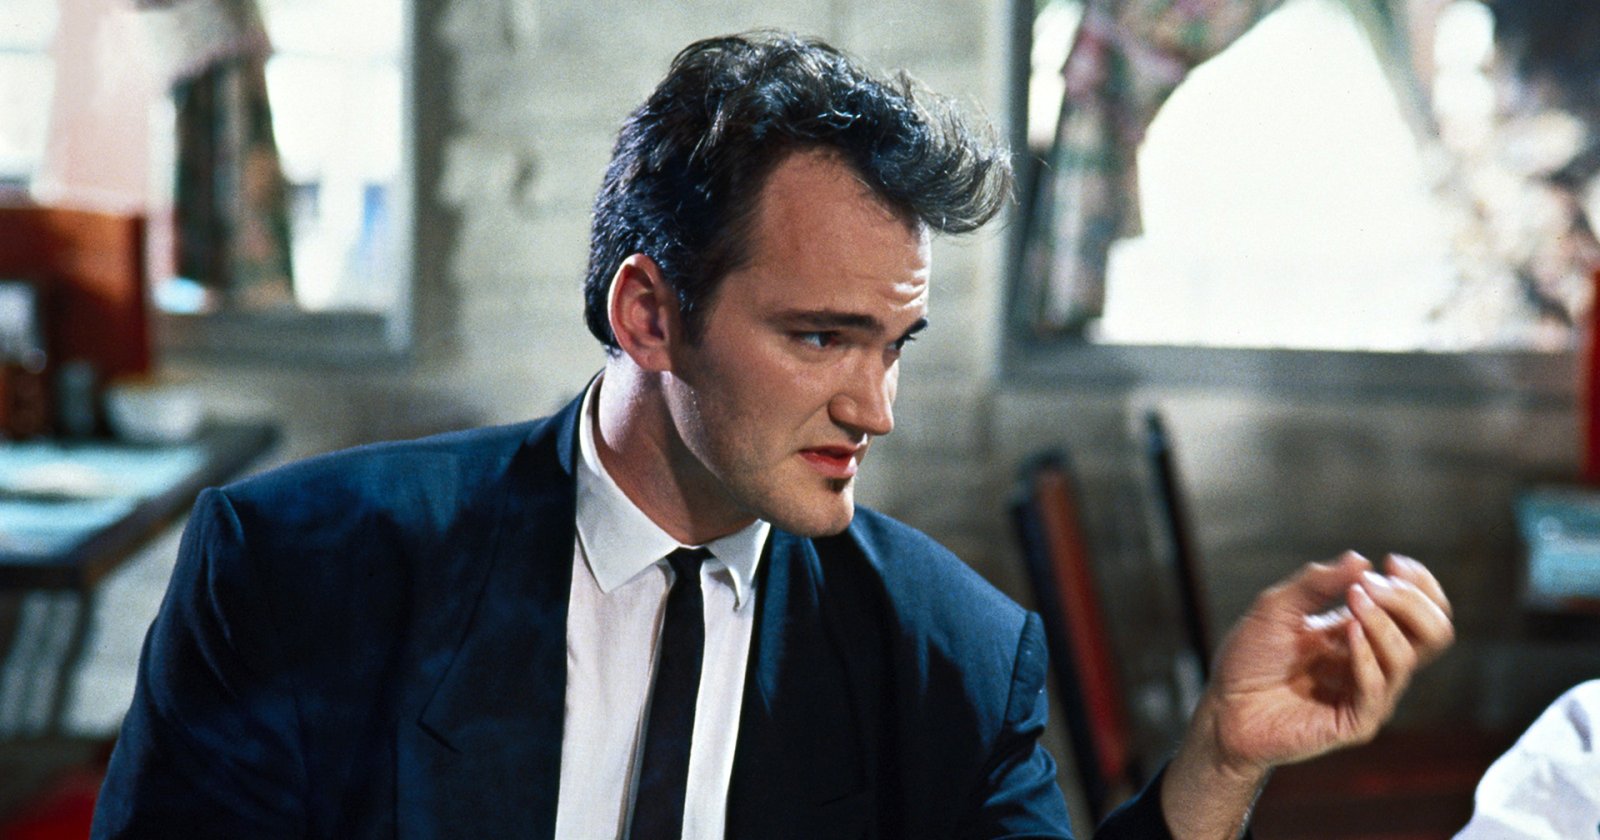 จบสมบูรณ์! Quentin Tarantino จะถ่ายทำหนังเรื่องสุดท้ายในแคลิฟอร์เนีย ที่เขาเริ่มกำกับหนังเรื่องแรก